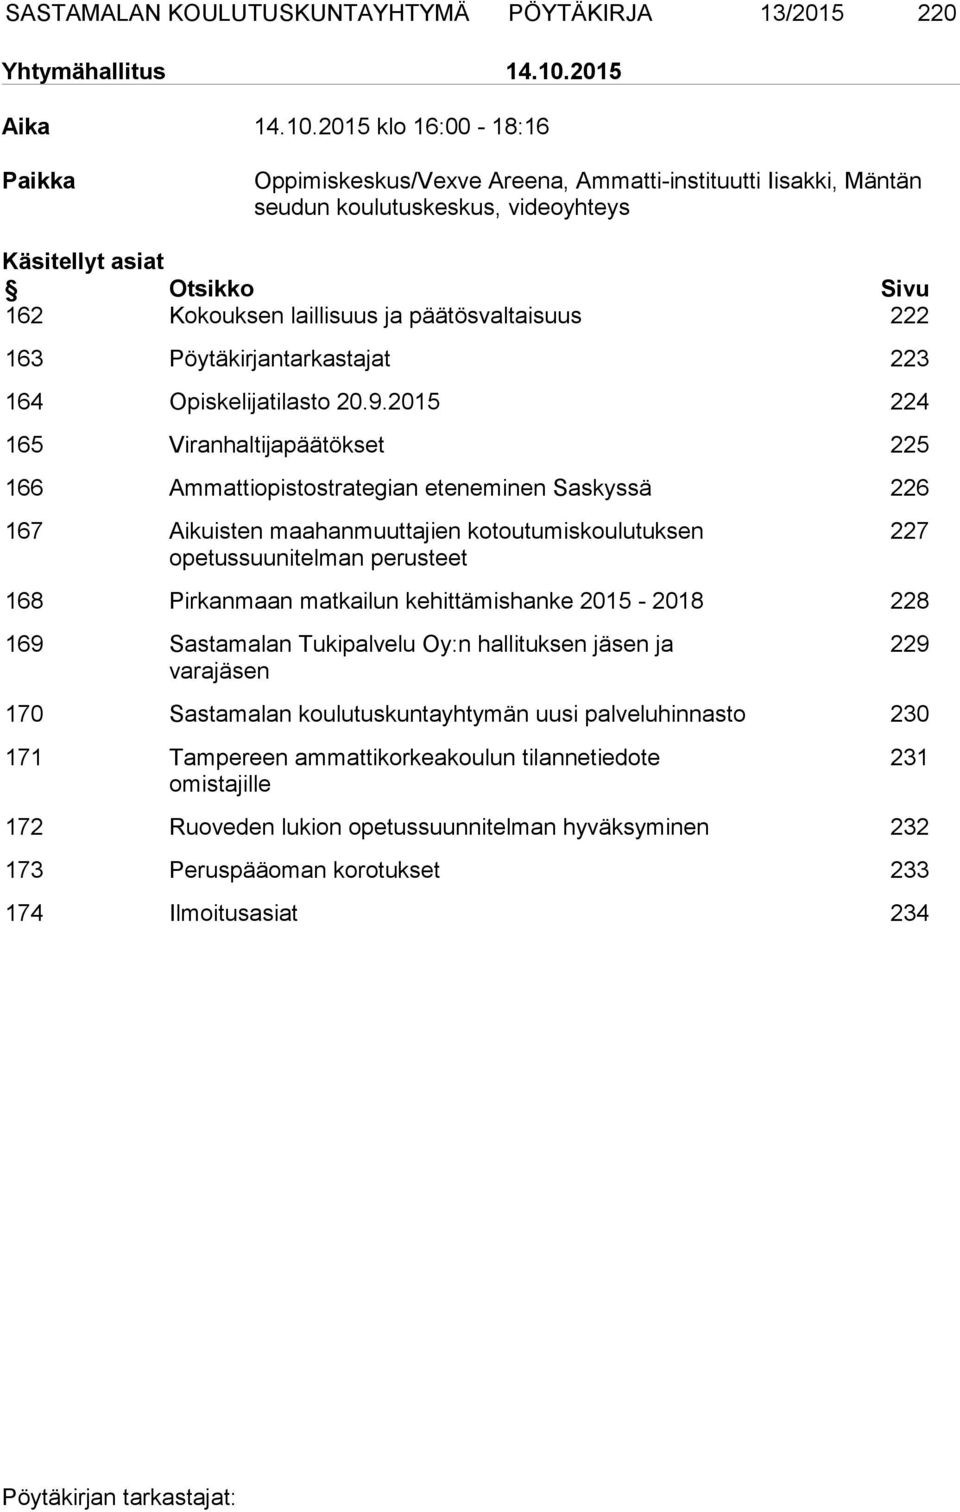 2015 klo 16:00-18:16 Paikka Oppimiskeskus/Vexve Areena, Ammatti-instituutti Iisakki, Mäntän seudun koulutuskeskus, videoyhteys Käsitellyt asiat Otsikko Sivu 162 Kokouksen laillisuus ja